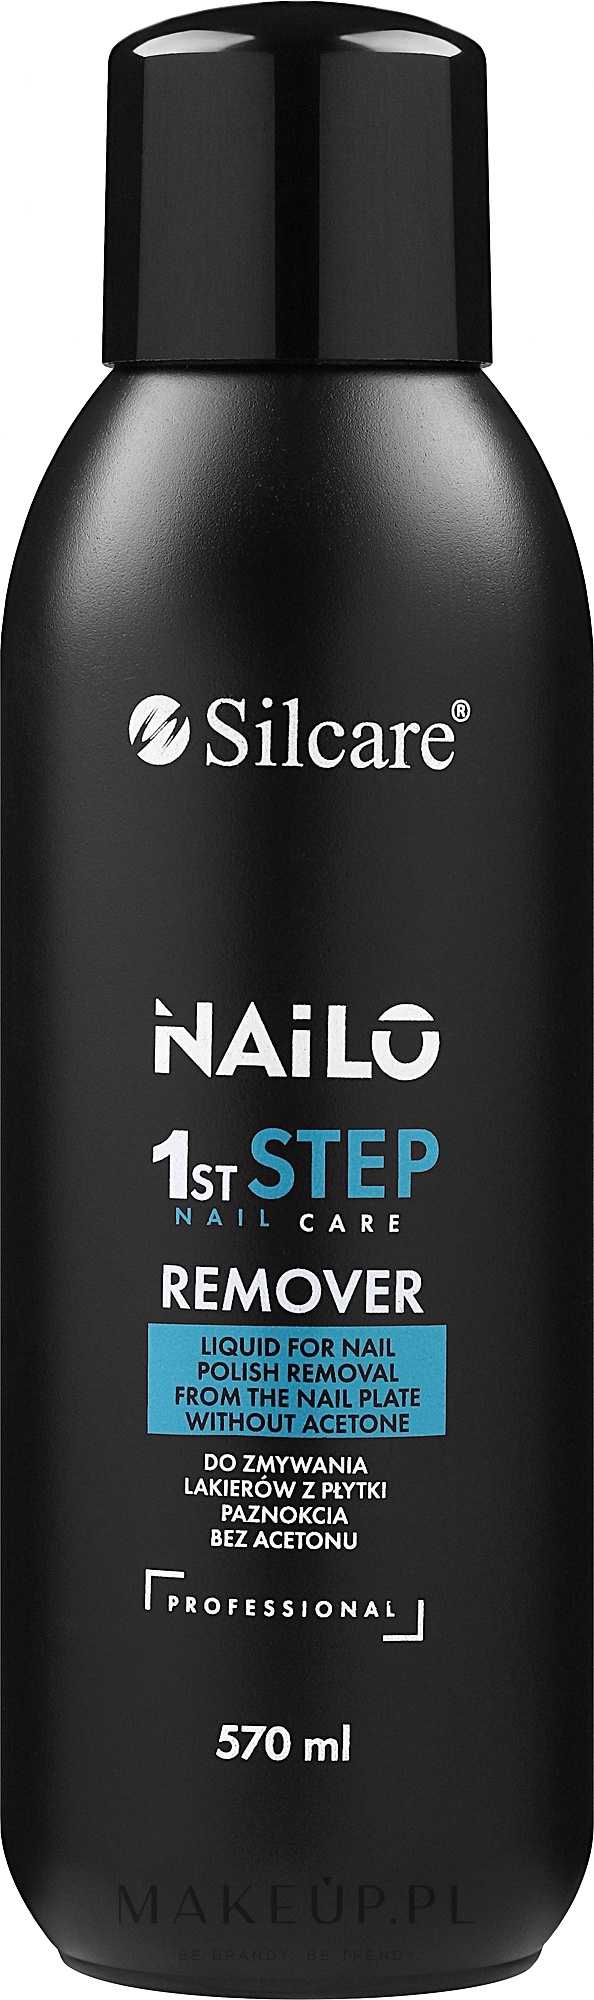 Zmywacz do paznokci bez acetonu - Silcare Nailo 1st Step Remover — Zdjęcie 570 ml